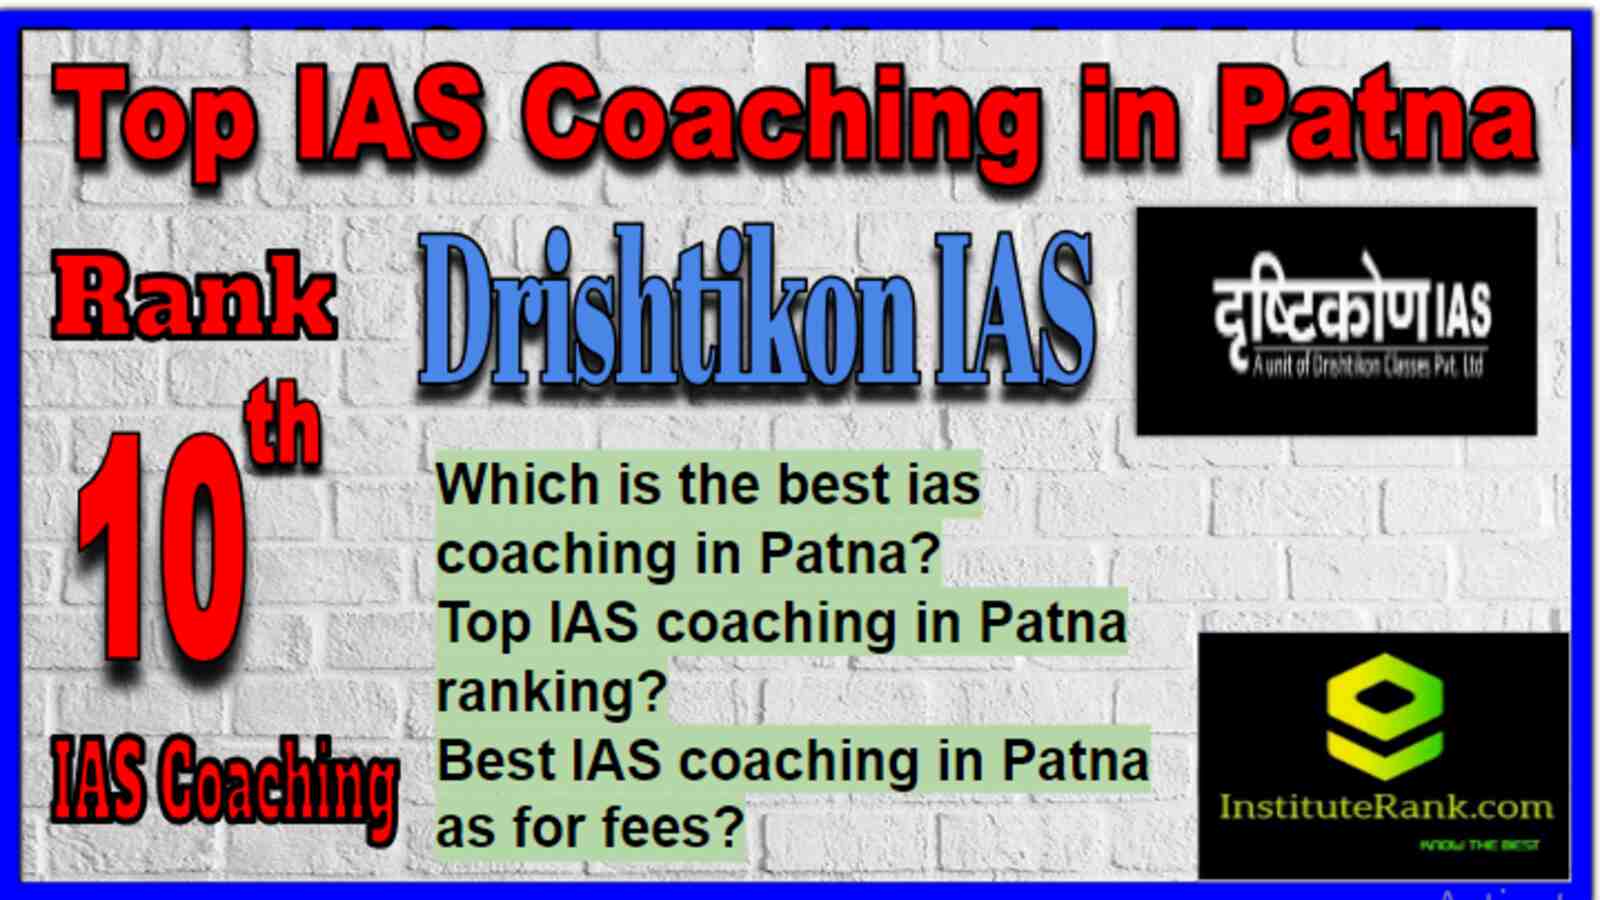 Rank 10 Top IAS Coaching in Patna